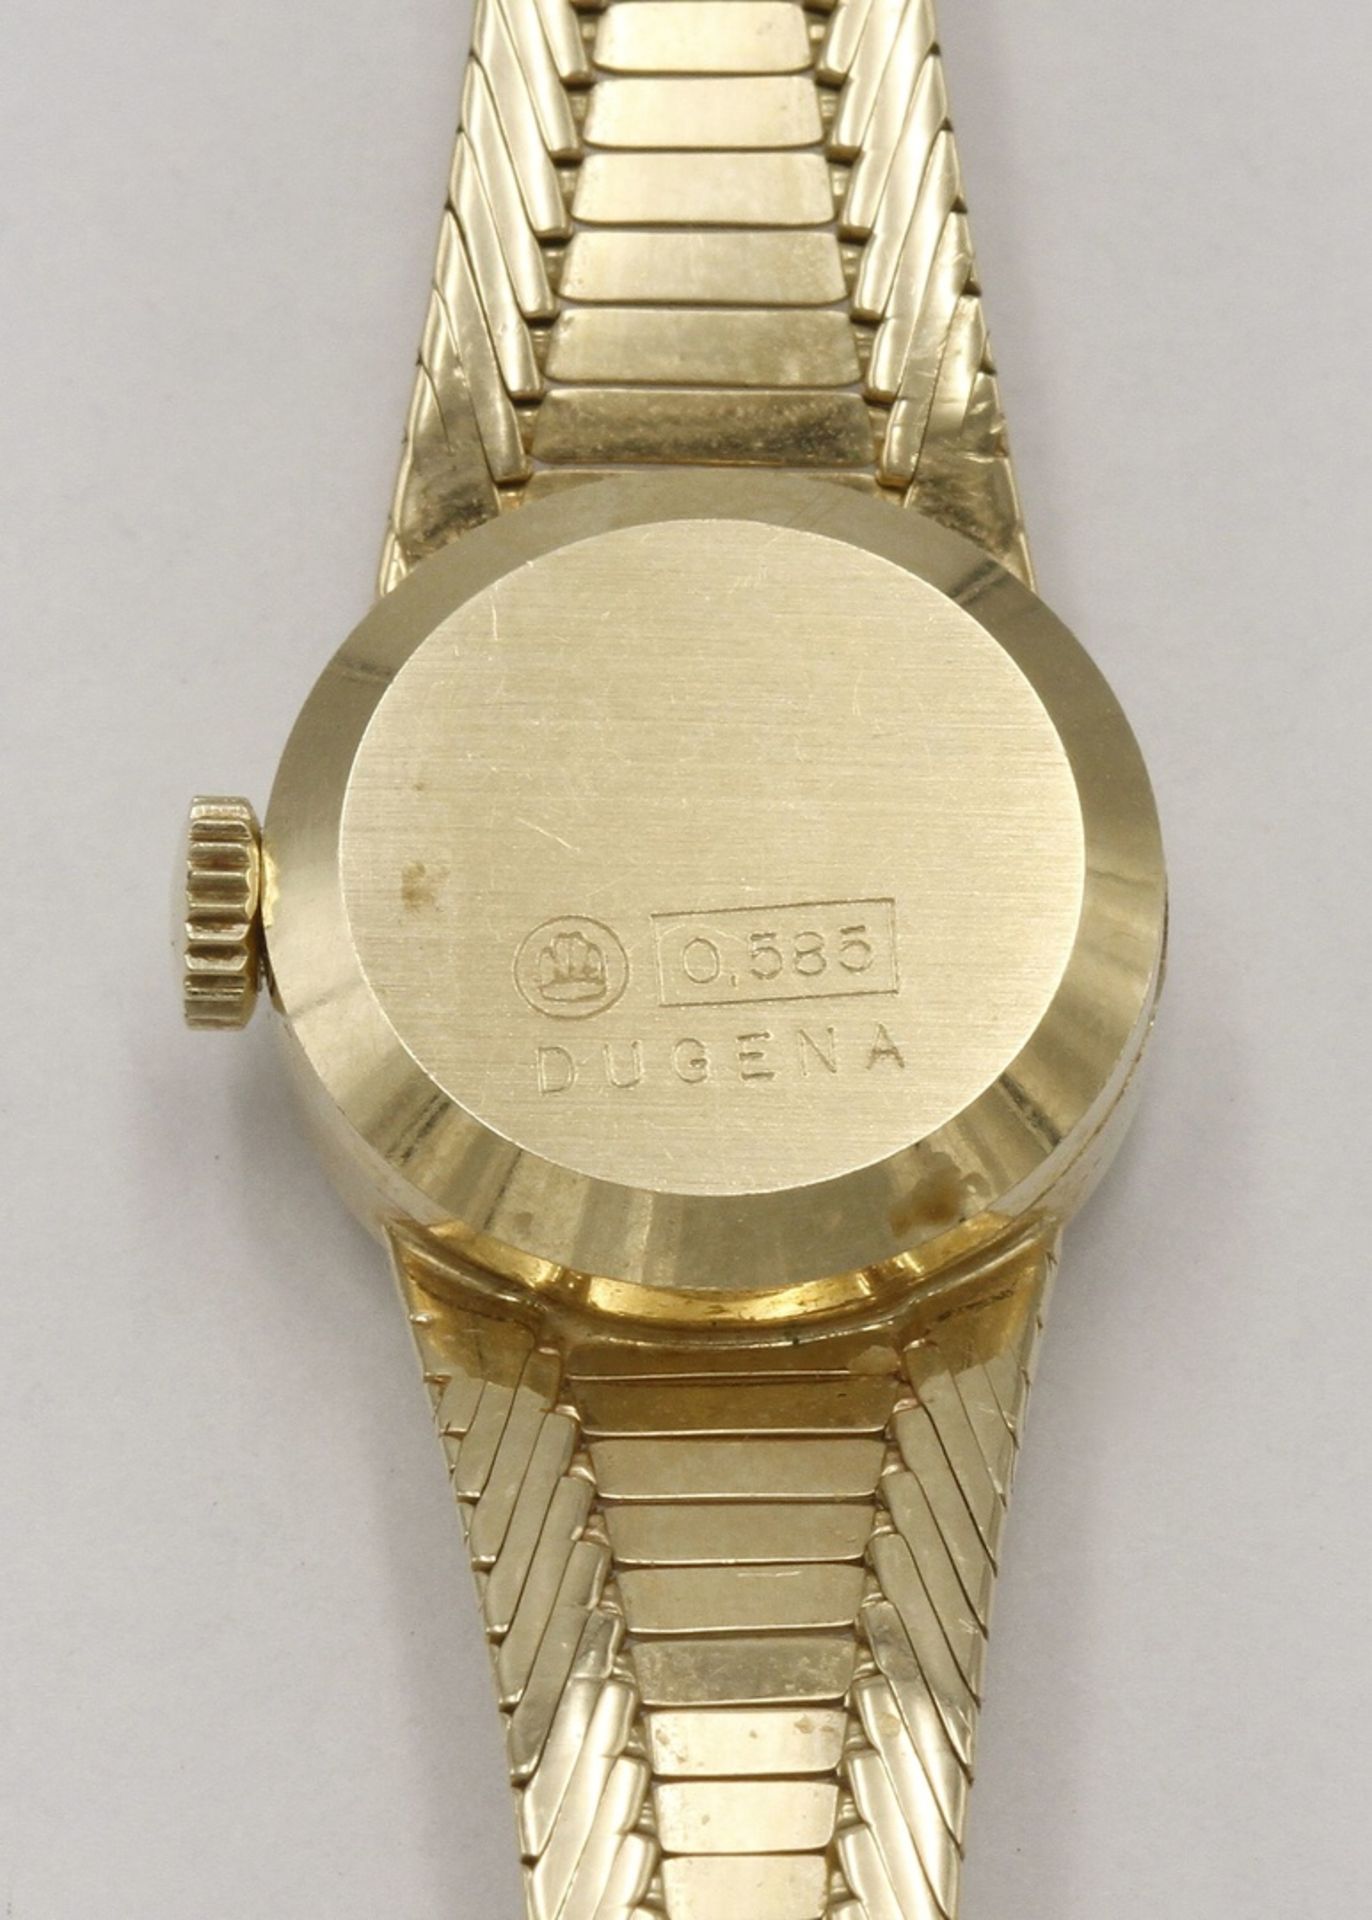 Dugena DamenarmbanduhrArmband und Gehäuse 585/- Gelbgold, 17 Juwelen, Dugena 2130 Uhrwerk - Bild 3 aus 4